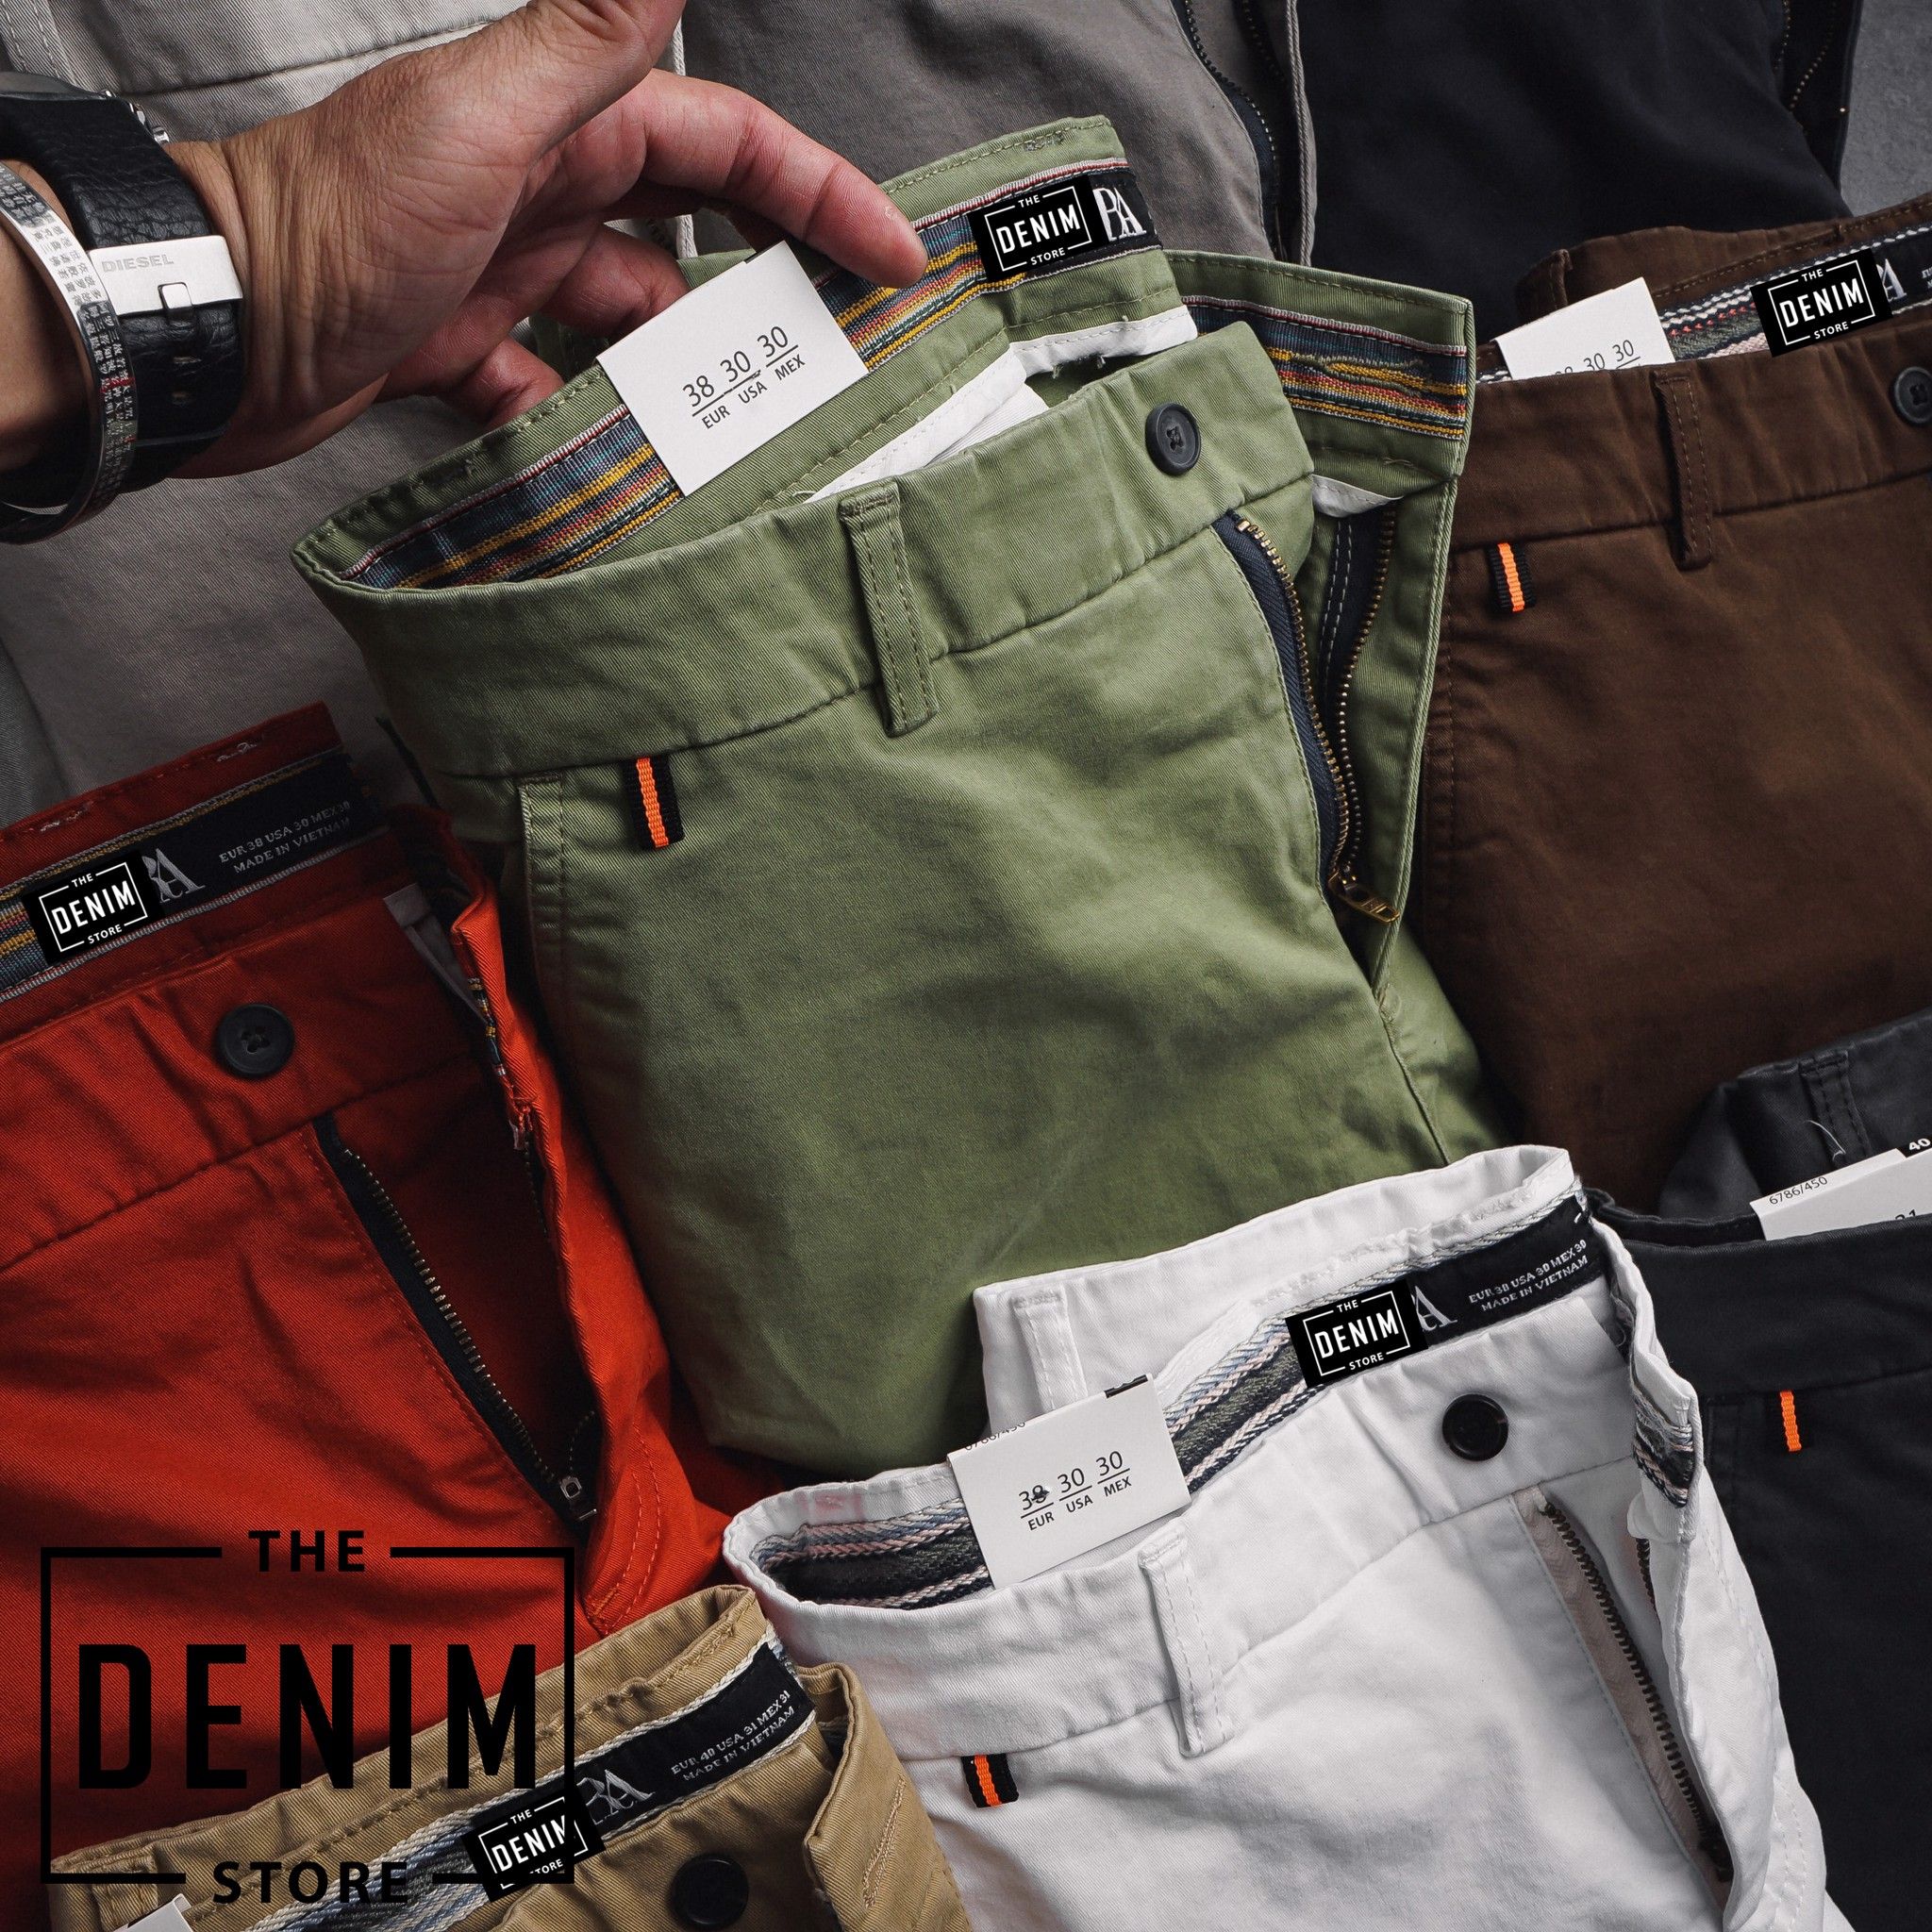 THE DENIM STORE - Chuyên quần áo nam hàng hiệu xuất khẩu - 35